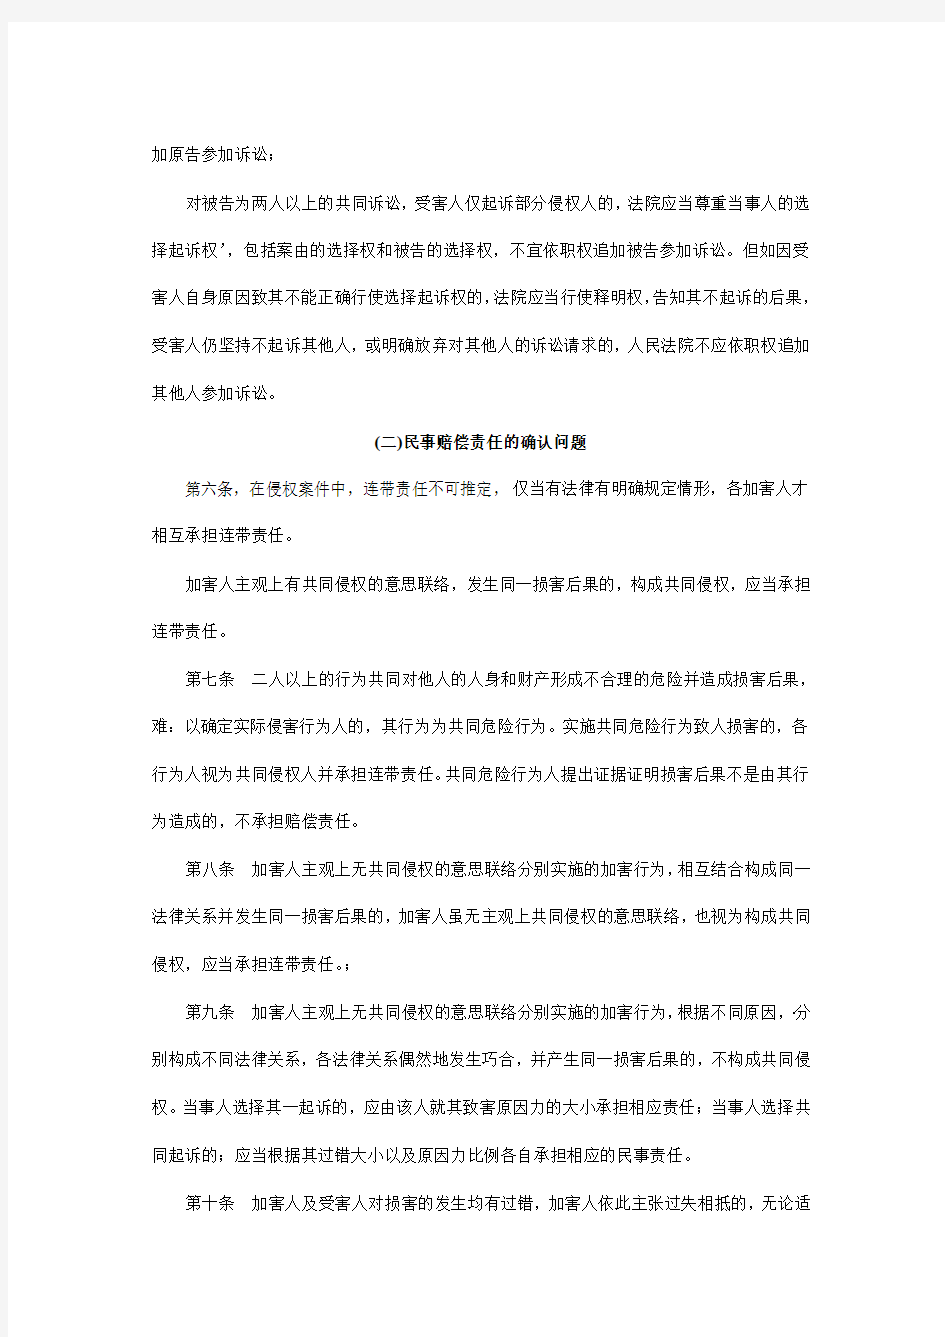 河南省高级人民法院(民事审判第一庭)关于当前民事审判若干问题的指导意见